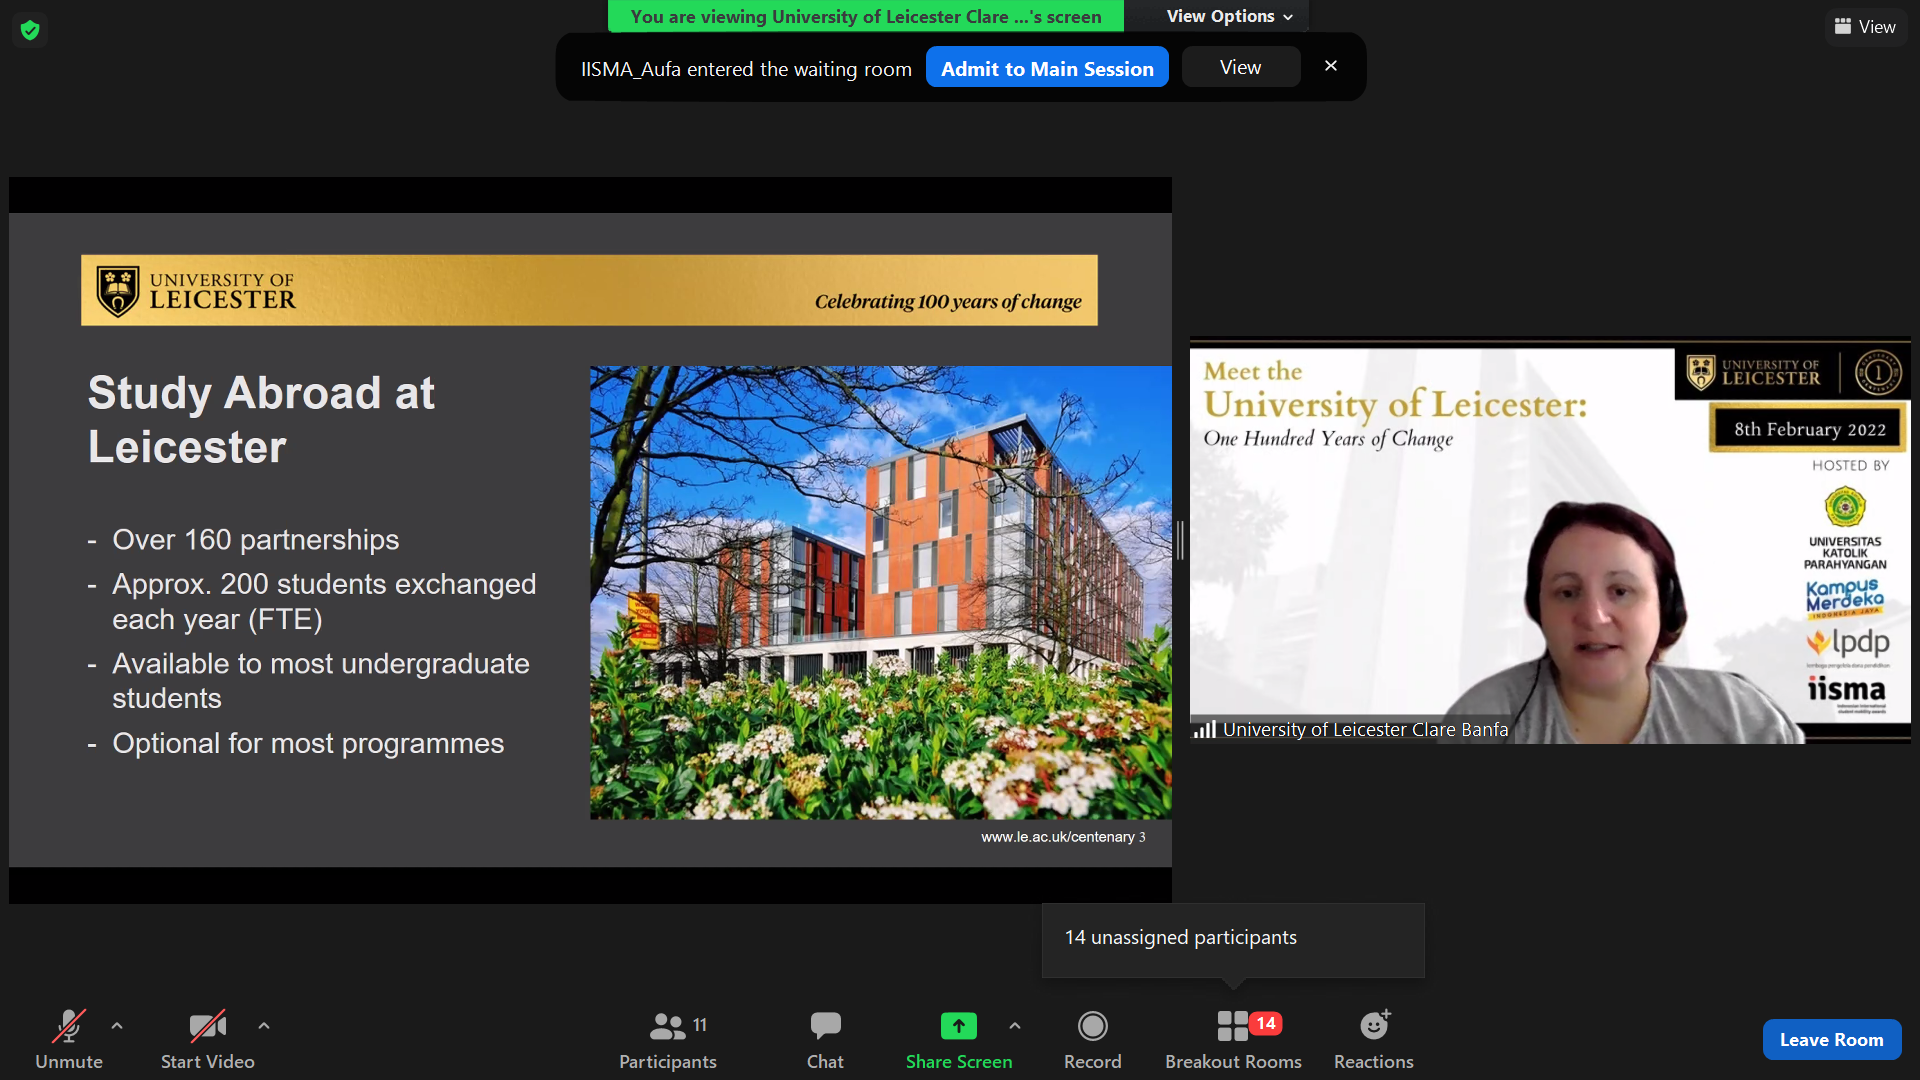 UNPAR Kenalkan University of Leicester ke Seluruh Perguruan Tinggi di Indonesia